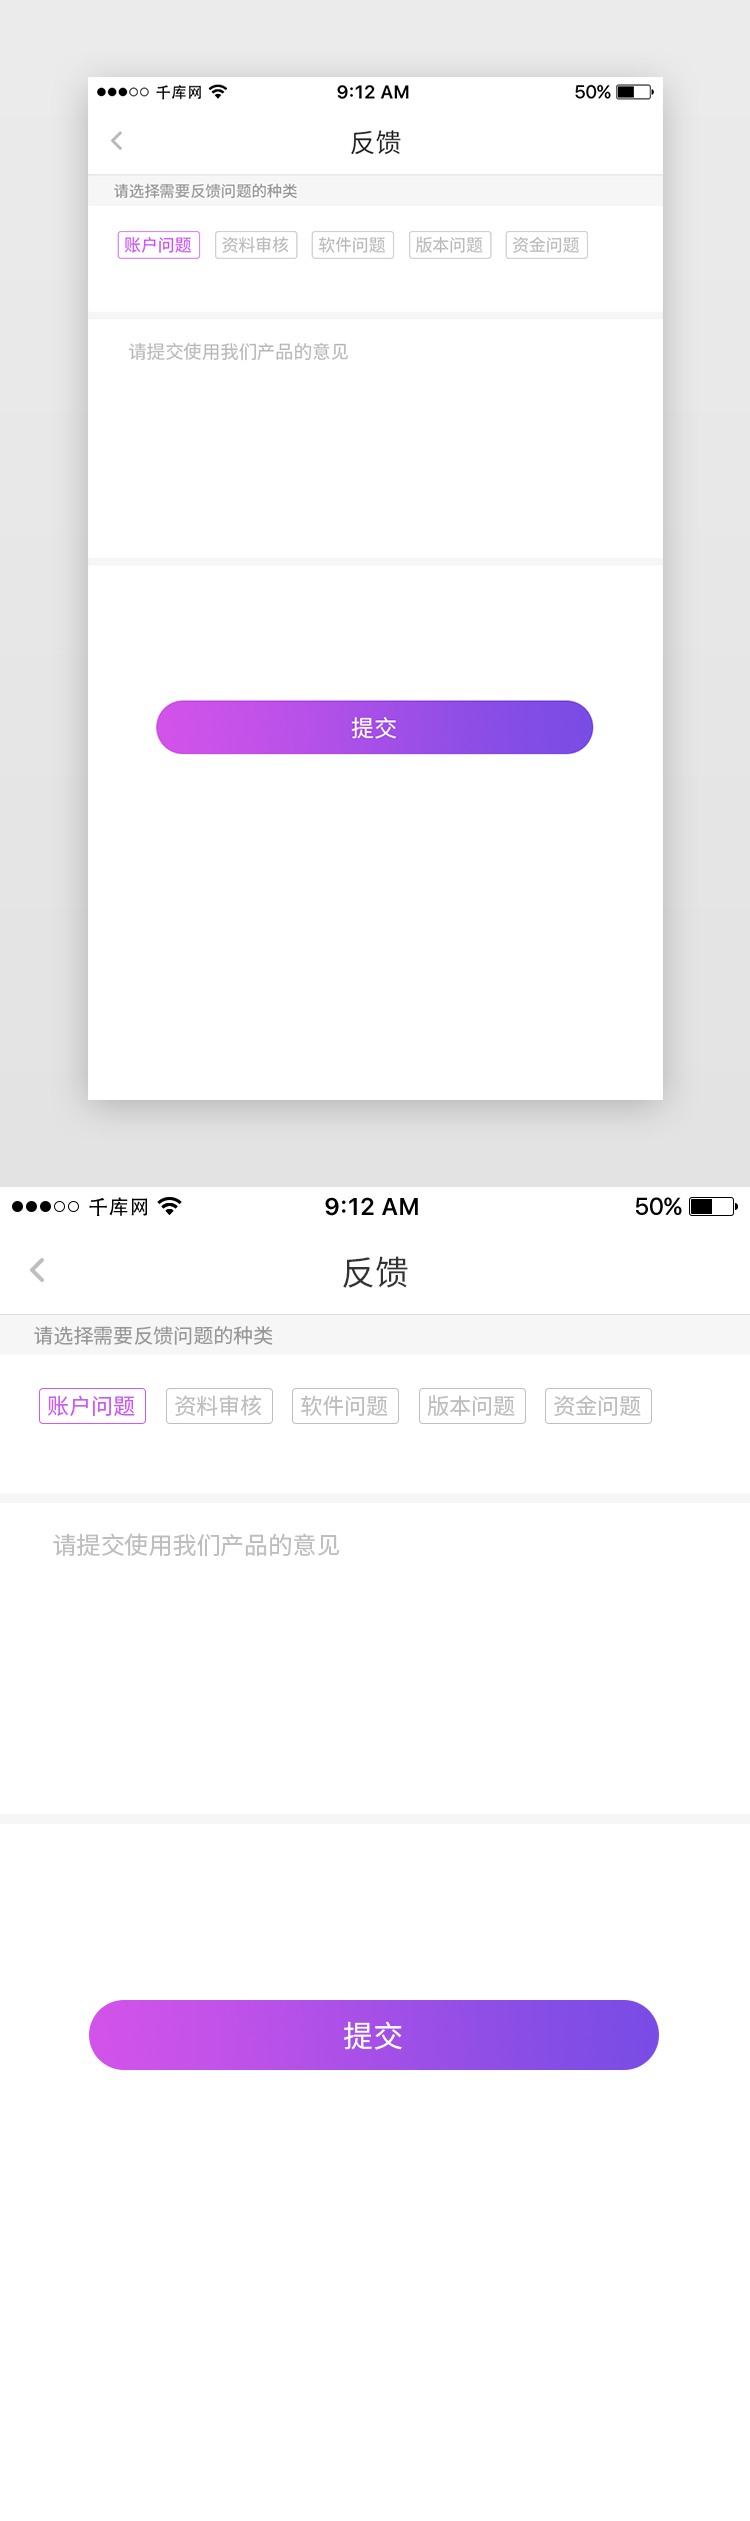 紫色婚恋交友App意见反馈页图片